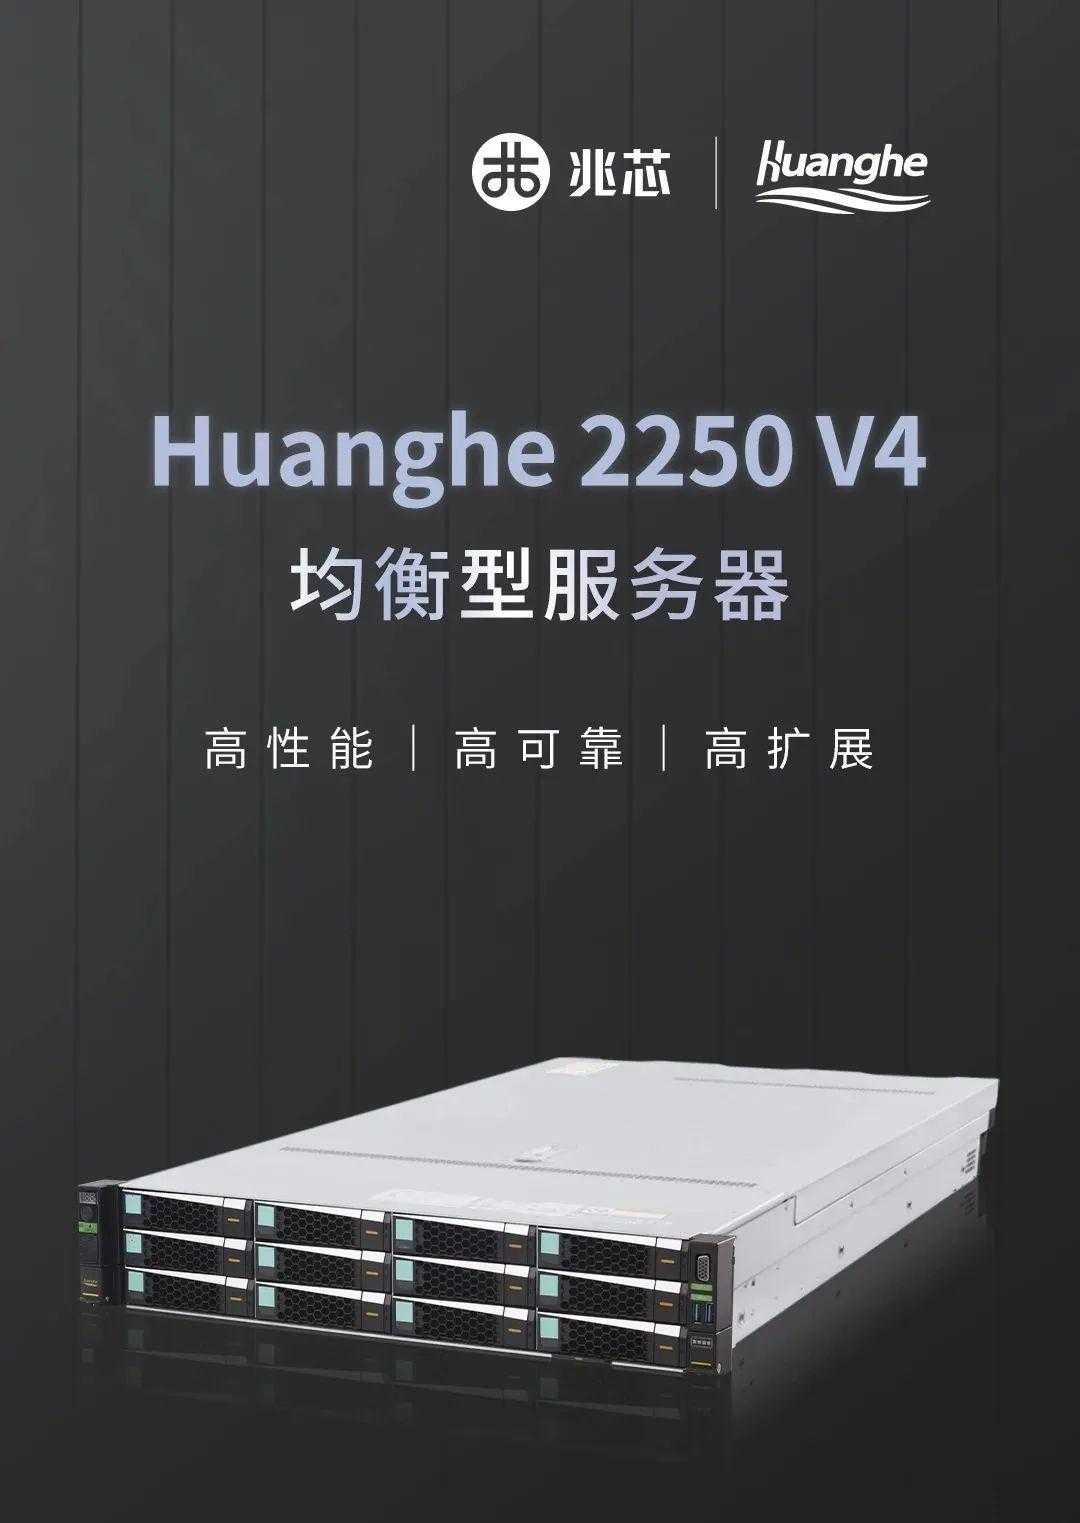 黄河Huanghe 2250 V4服务器发布